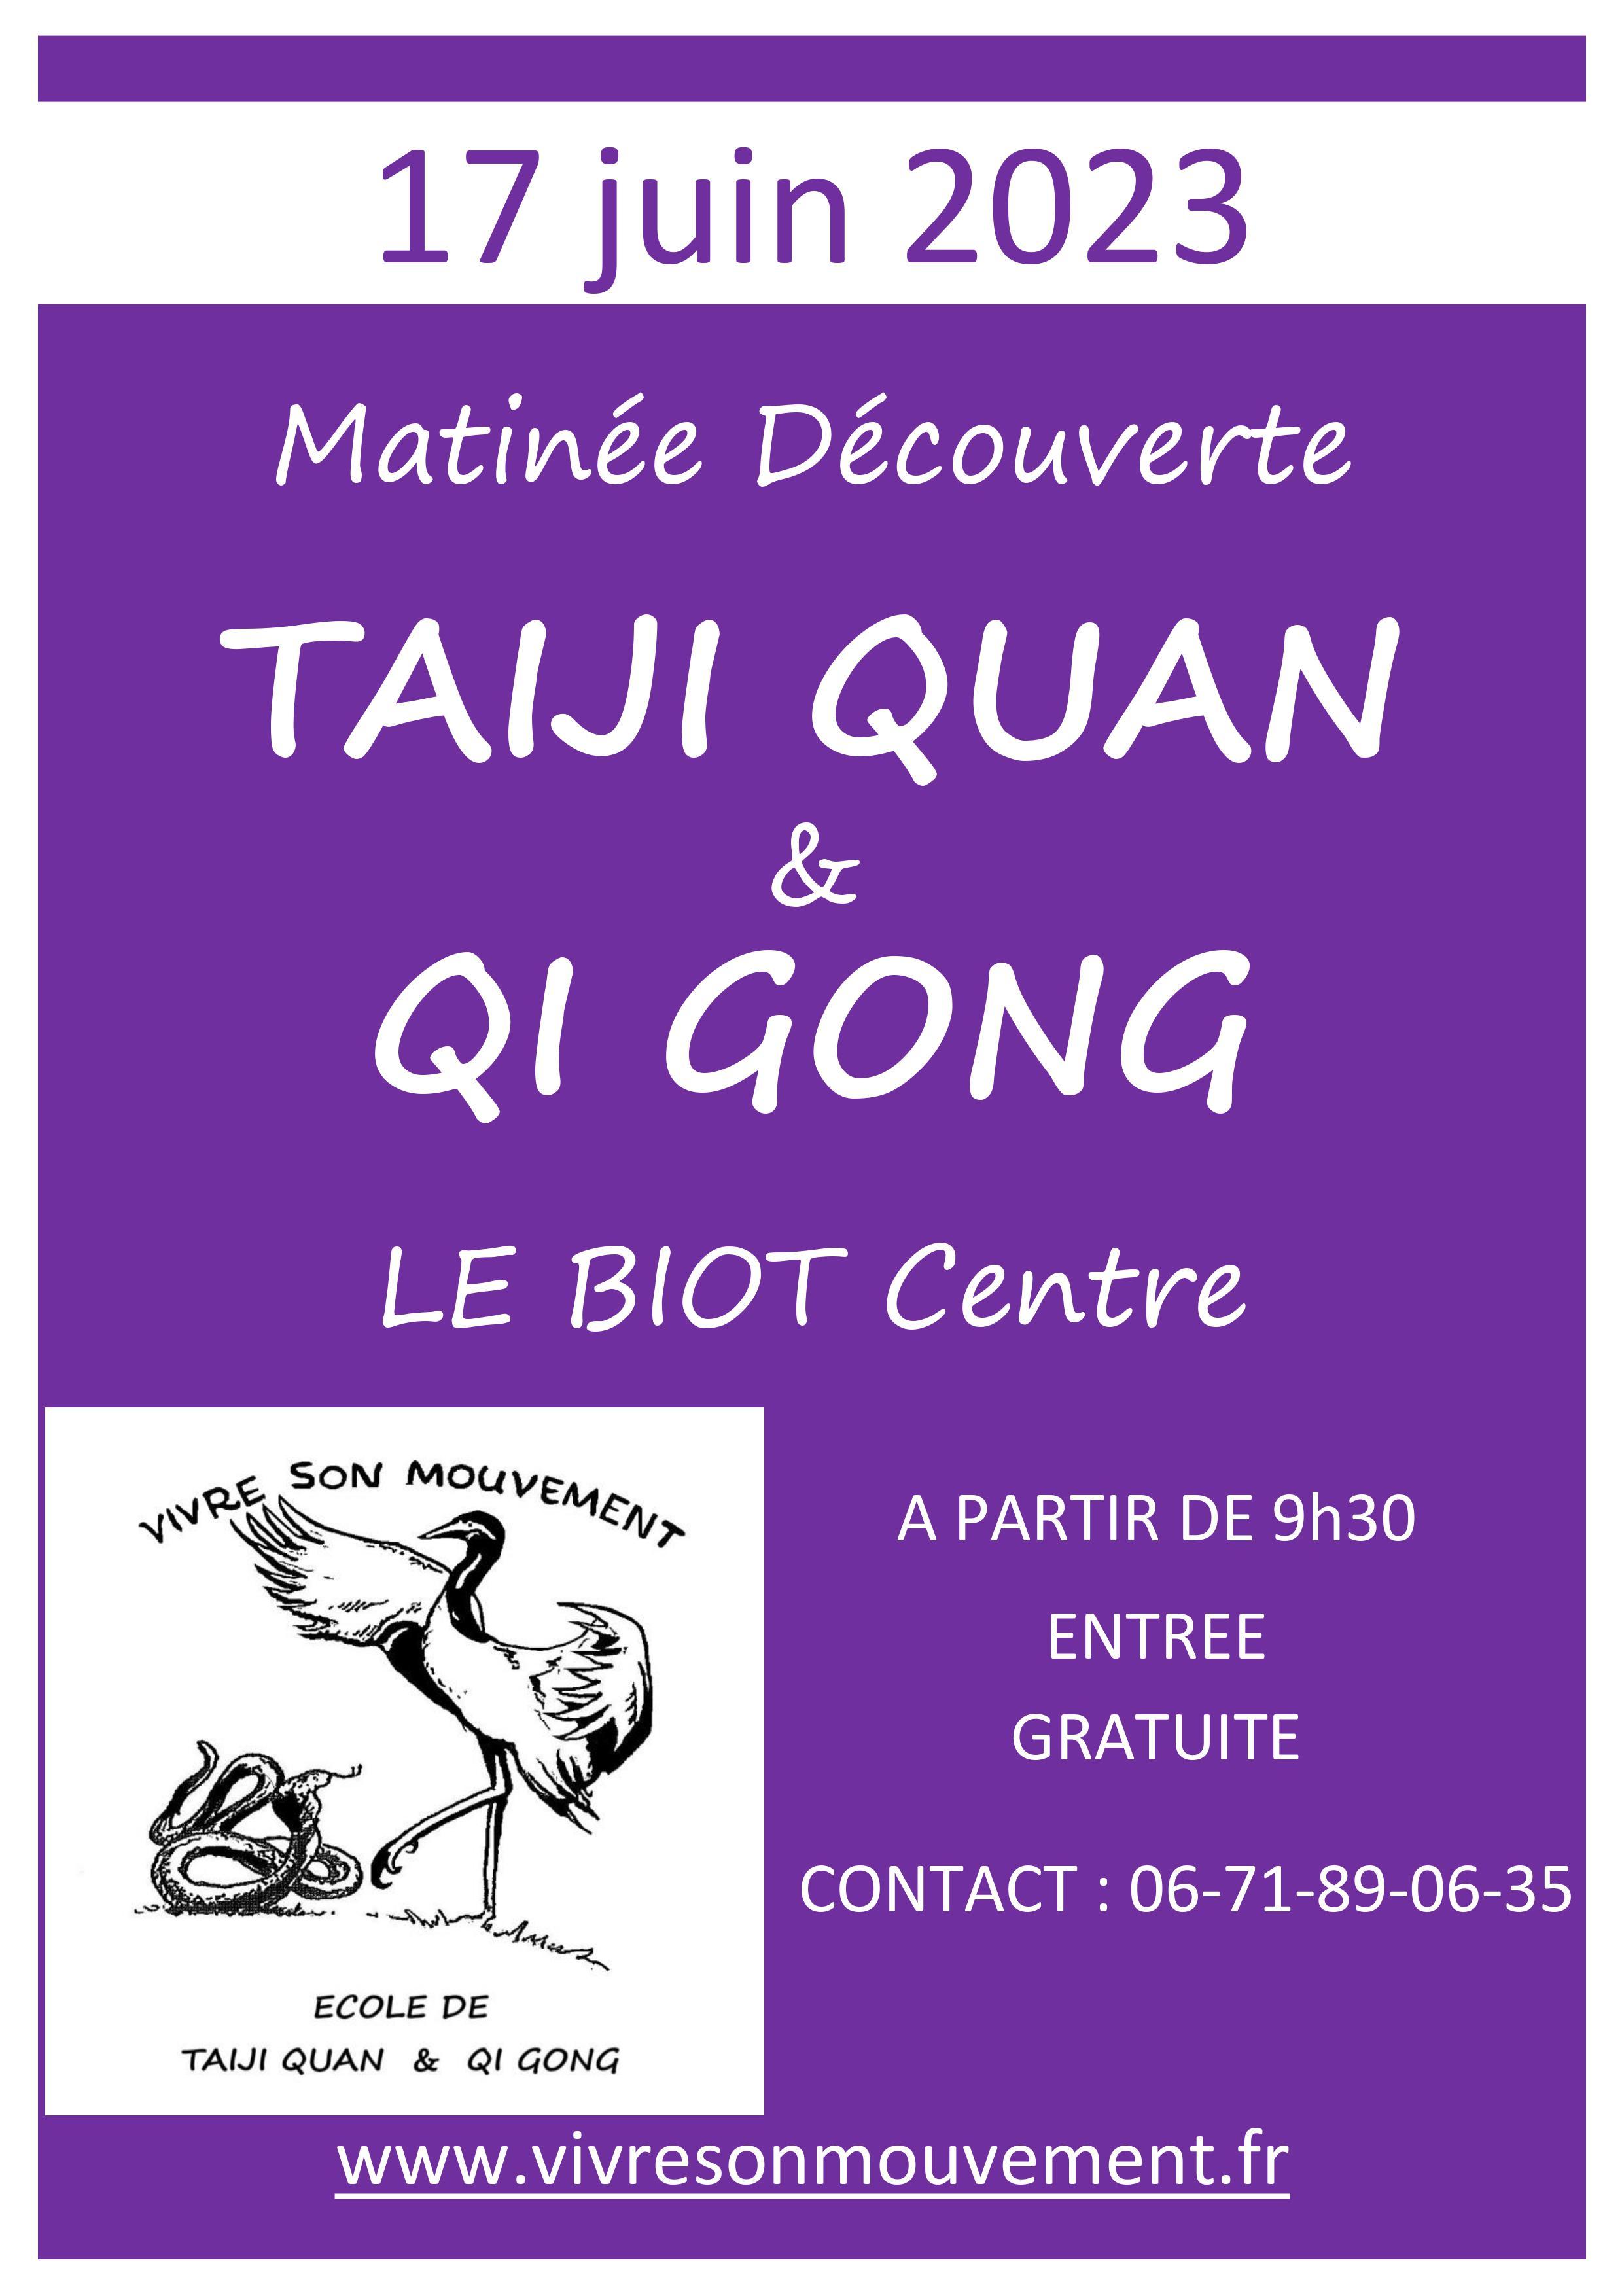 Image de couverture - Matinée Taiji Quan et Qi Gong au Biot